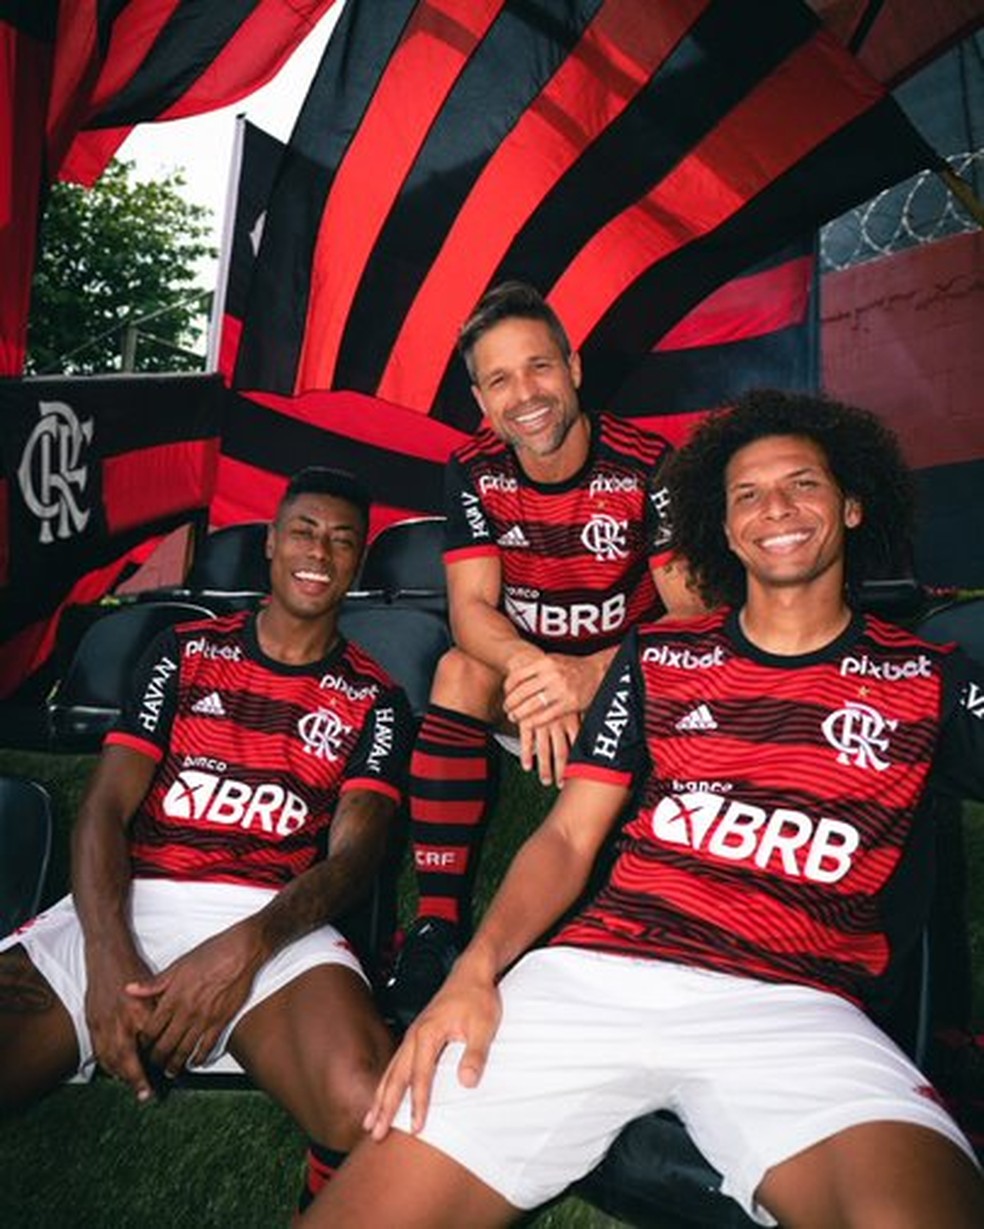 Faixa em nova camisa do Flamengo incomoda conselho